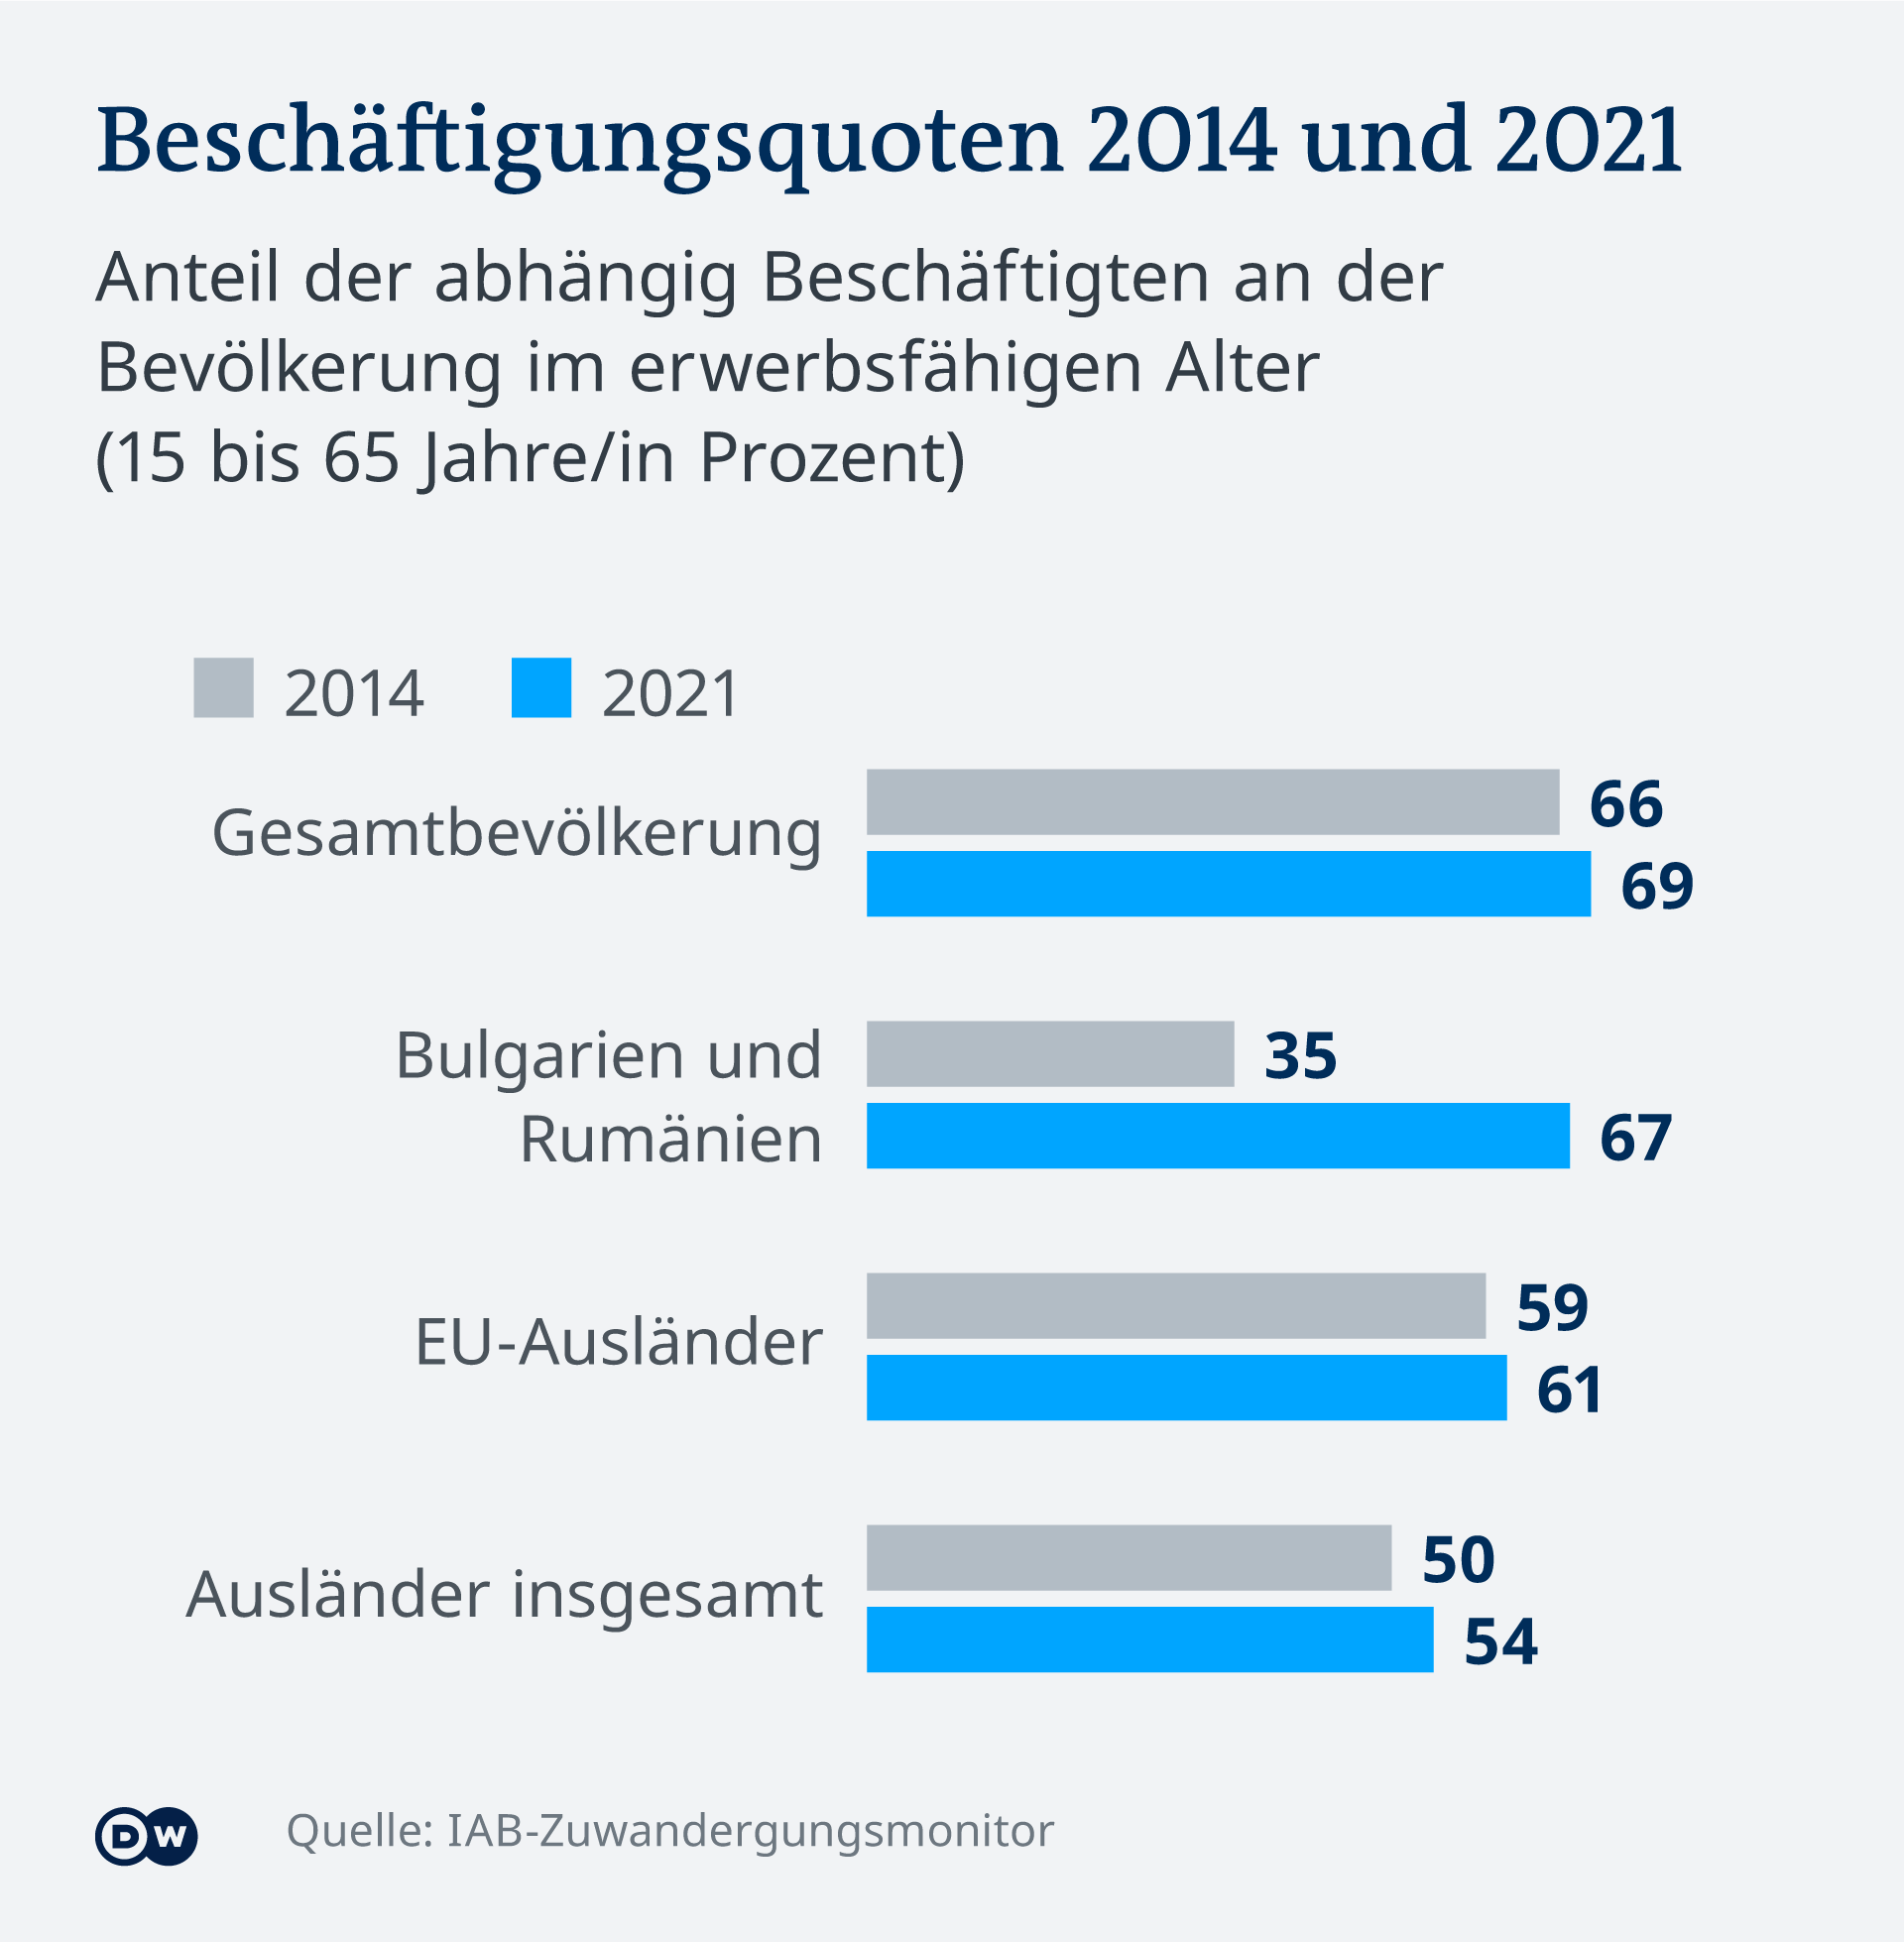 Rata de ocupaţie în rândul românilor şi bulgarilor, raportată la restul strănilor şi populaţia totală din Germania, comparativ între anii 2014 şi 2021